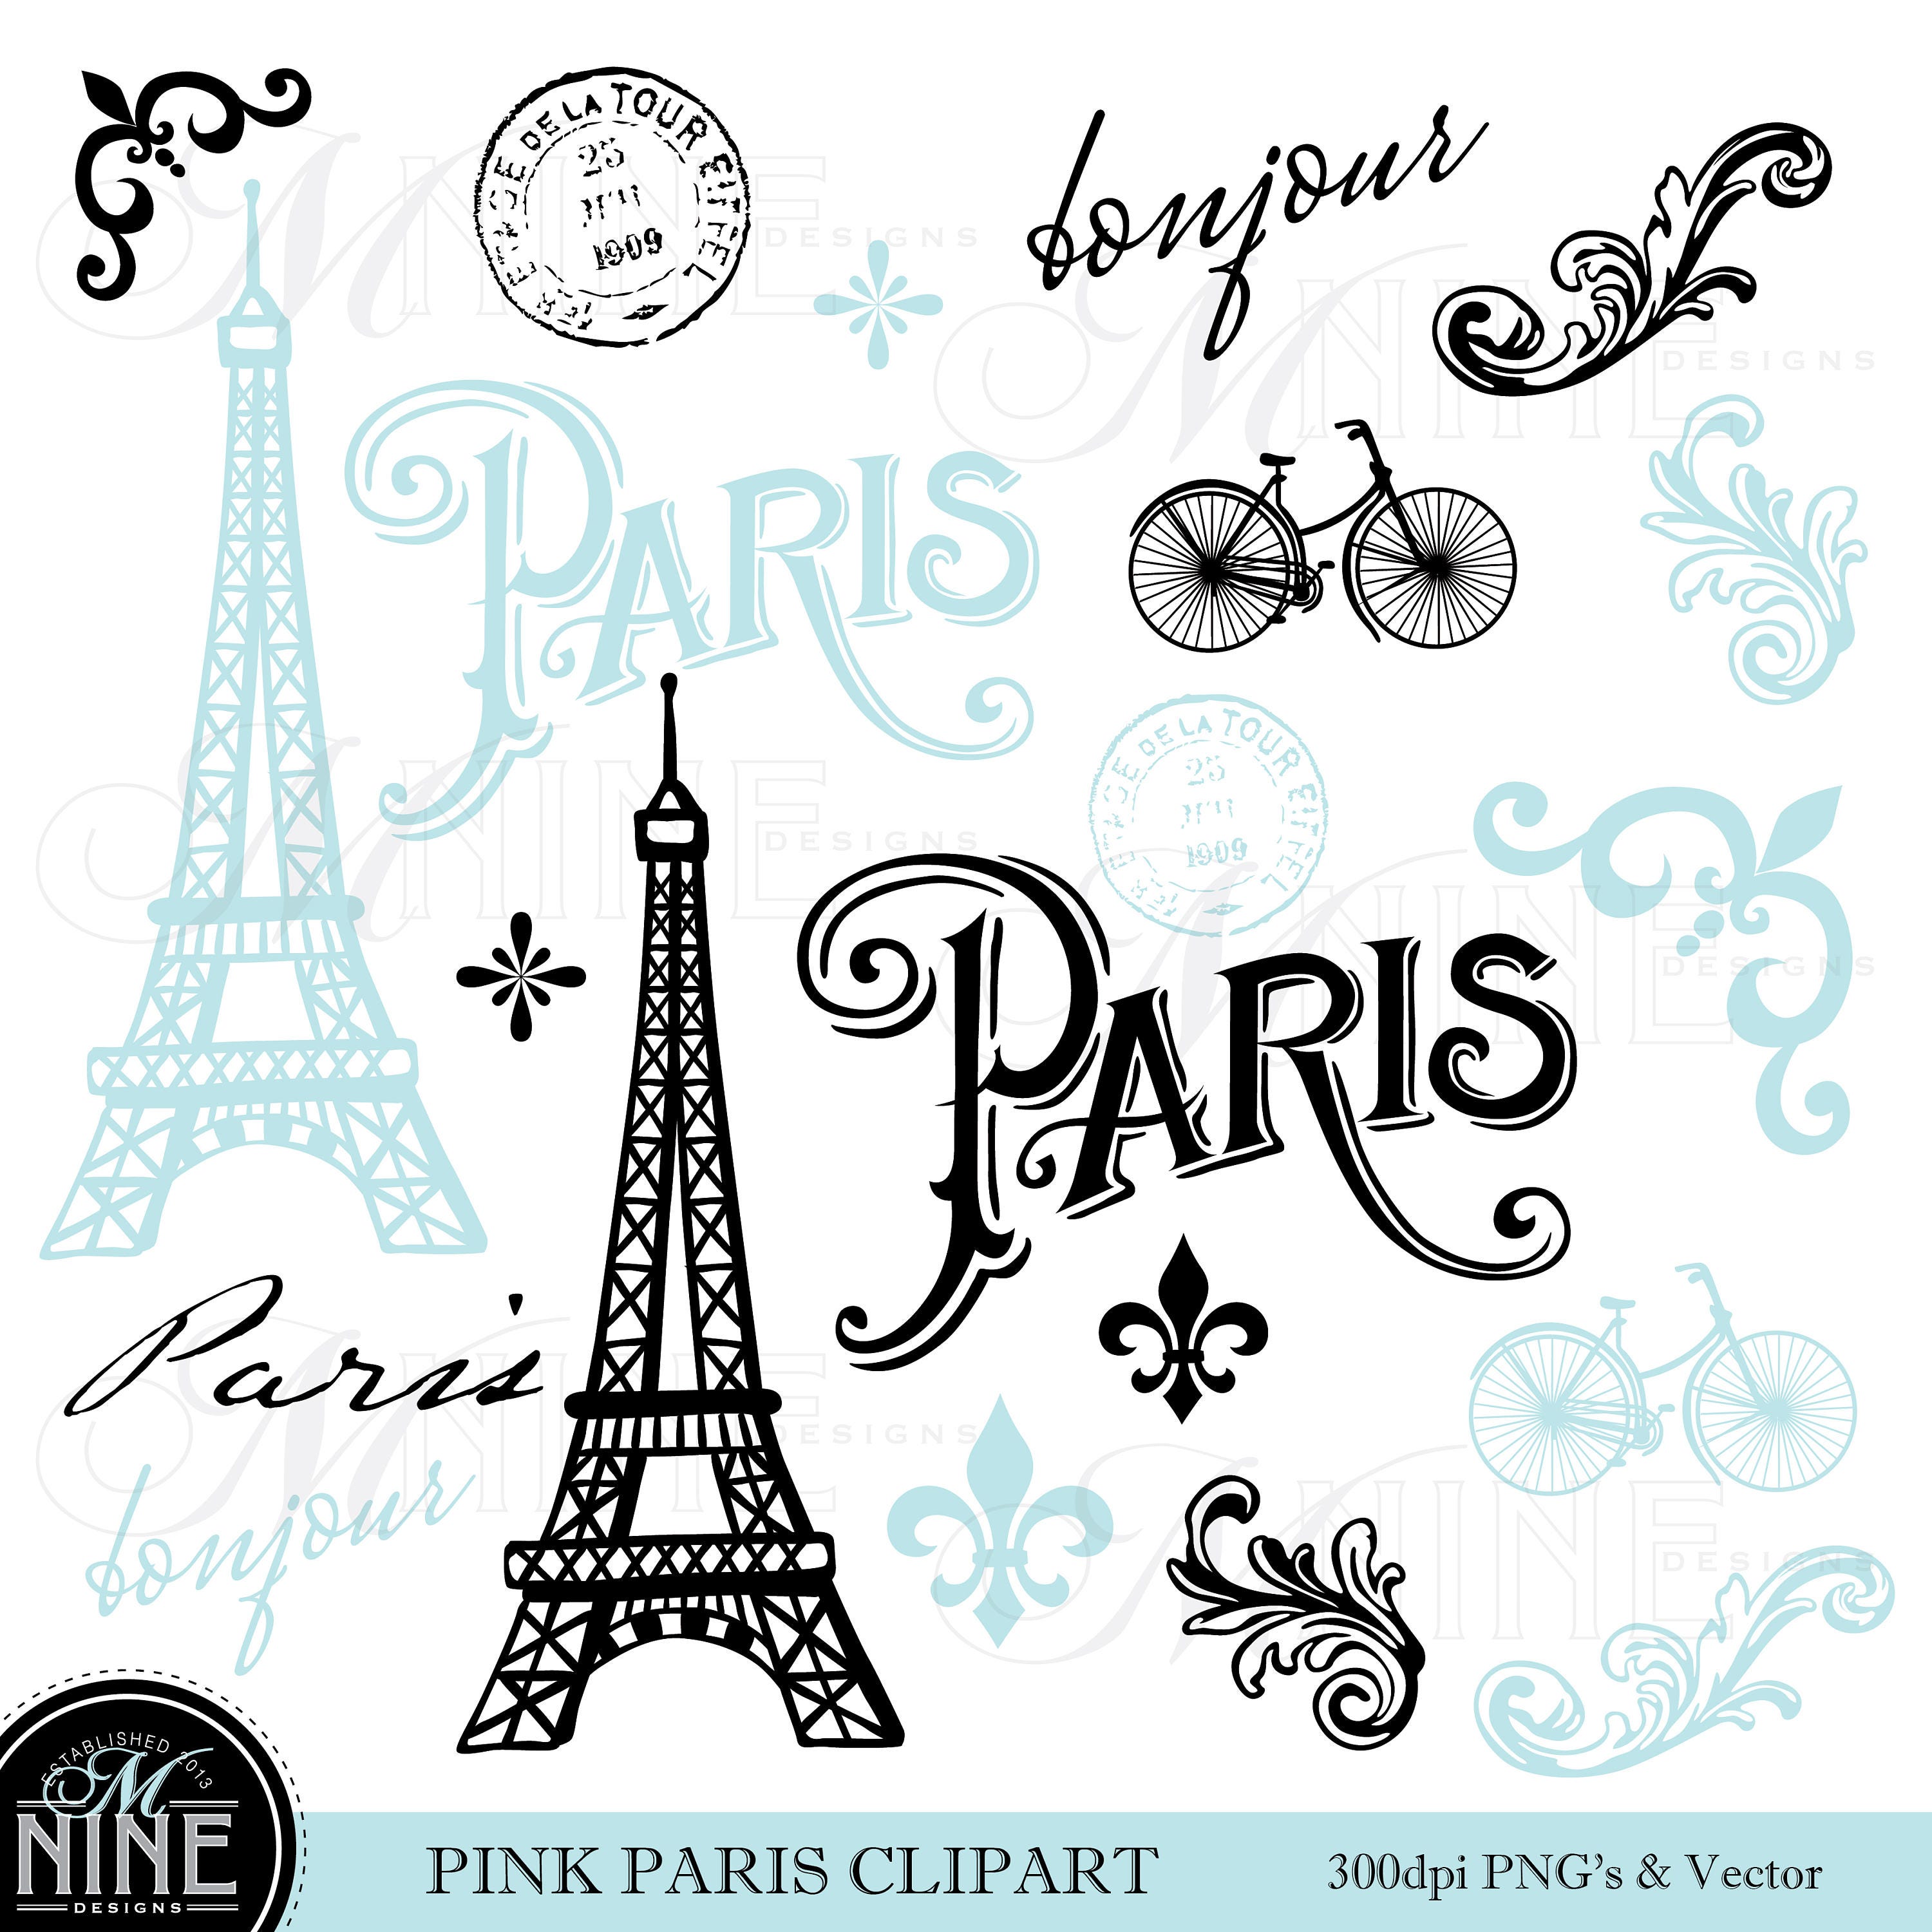 Download BLUE PARIS Clip Art / Paris Theme Clipart Download / Parisian